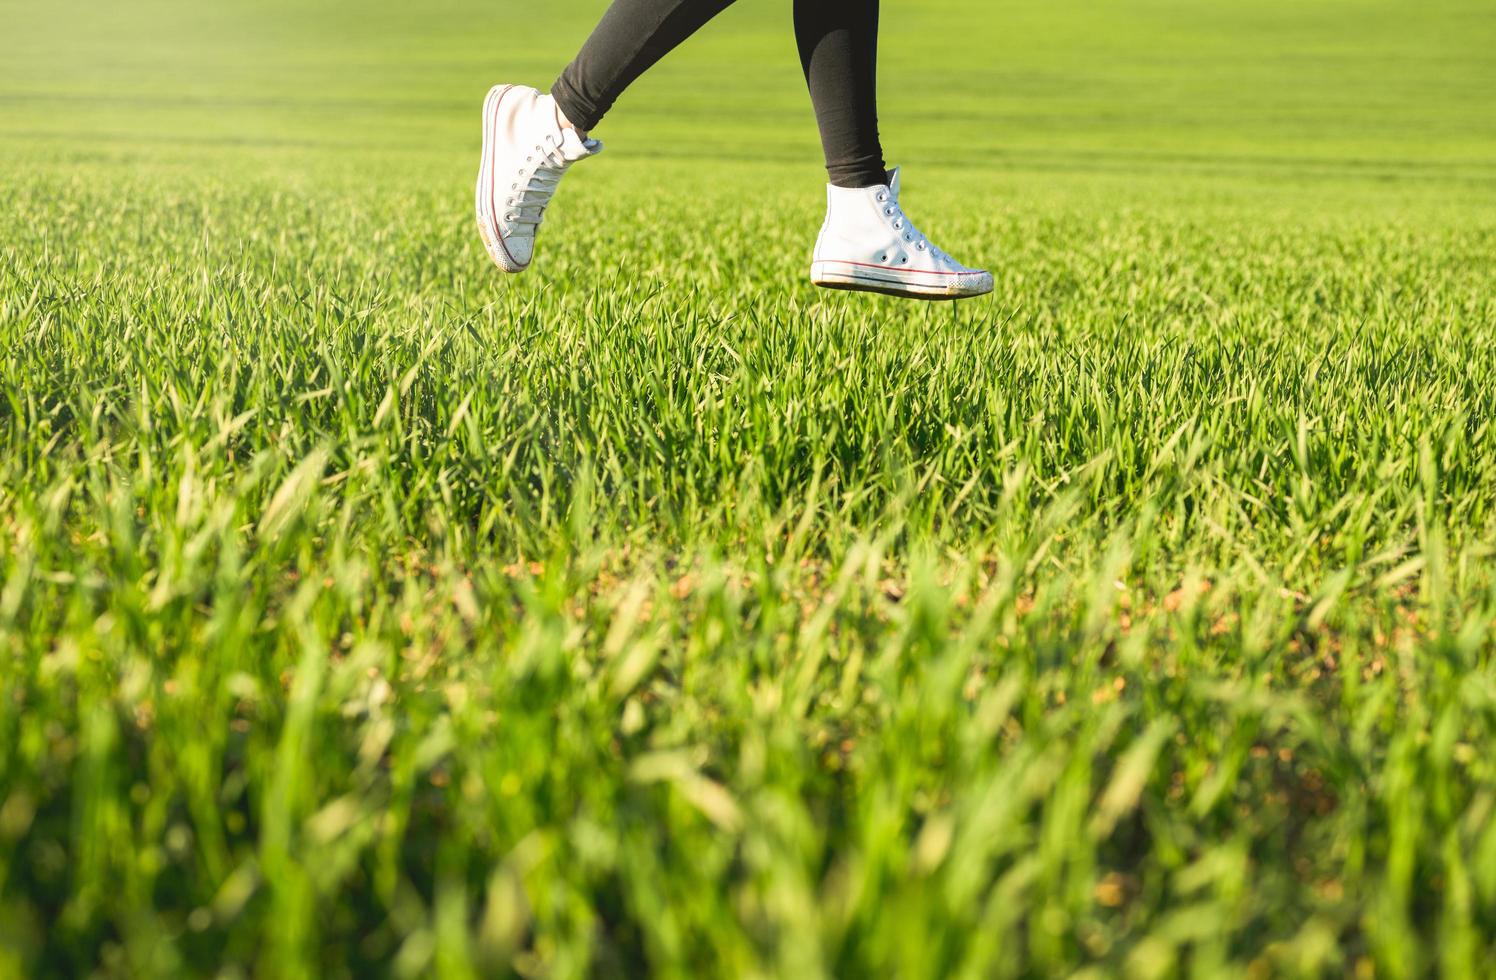 pés de menina com tênis branco pulando em um prado verde foto